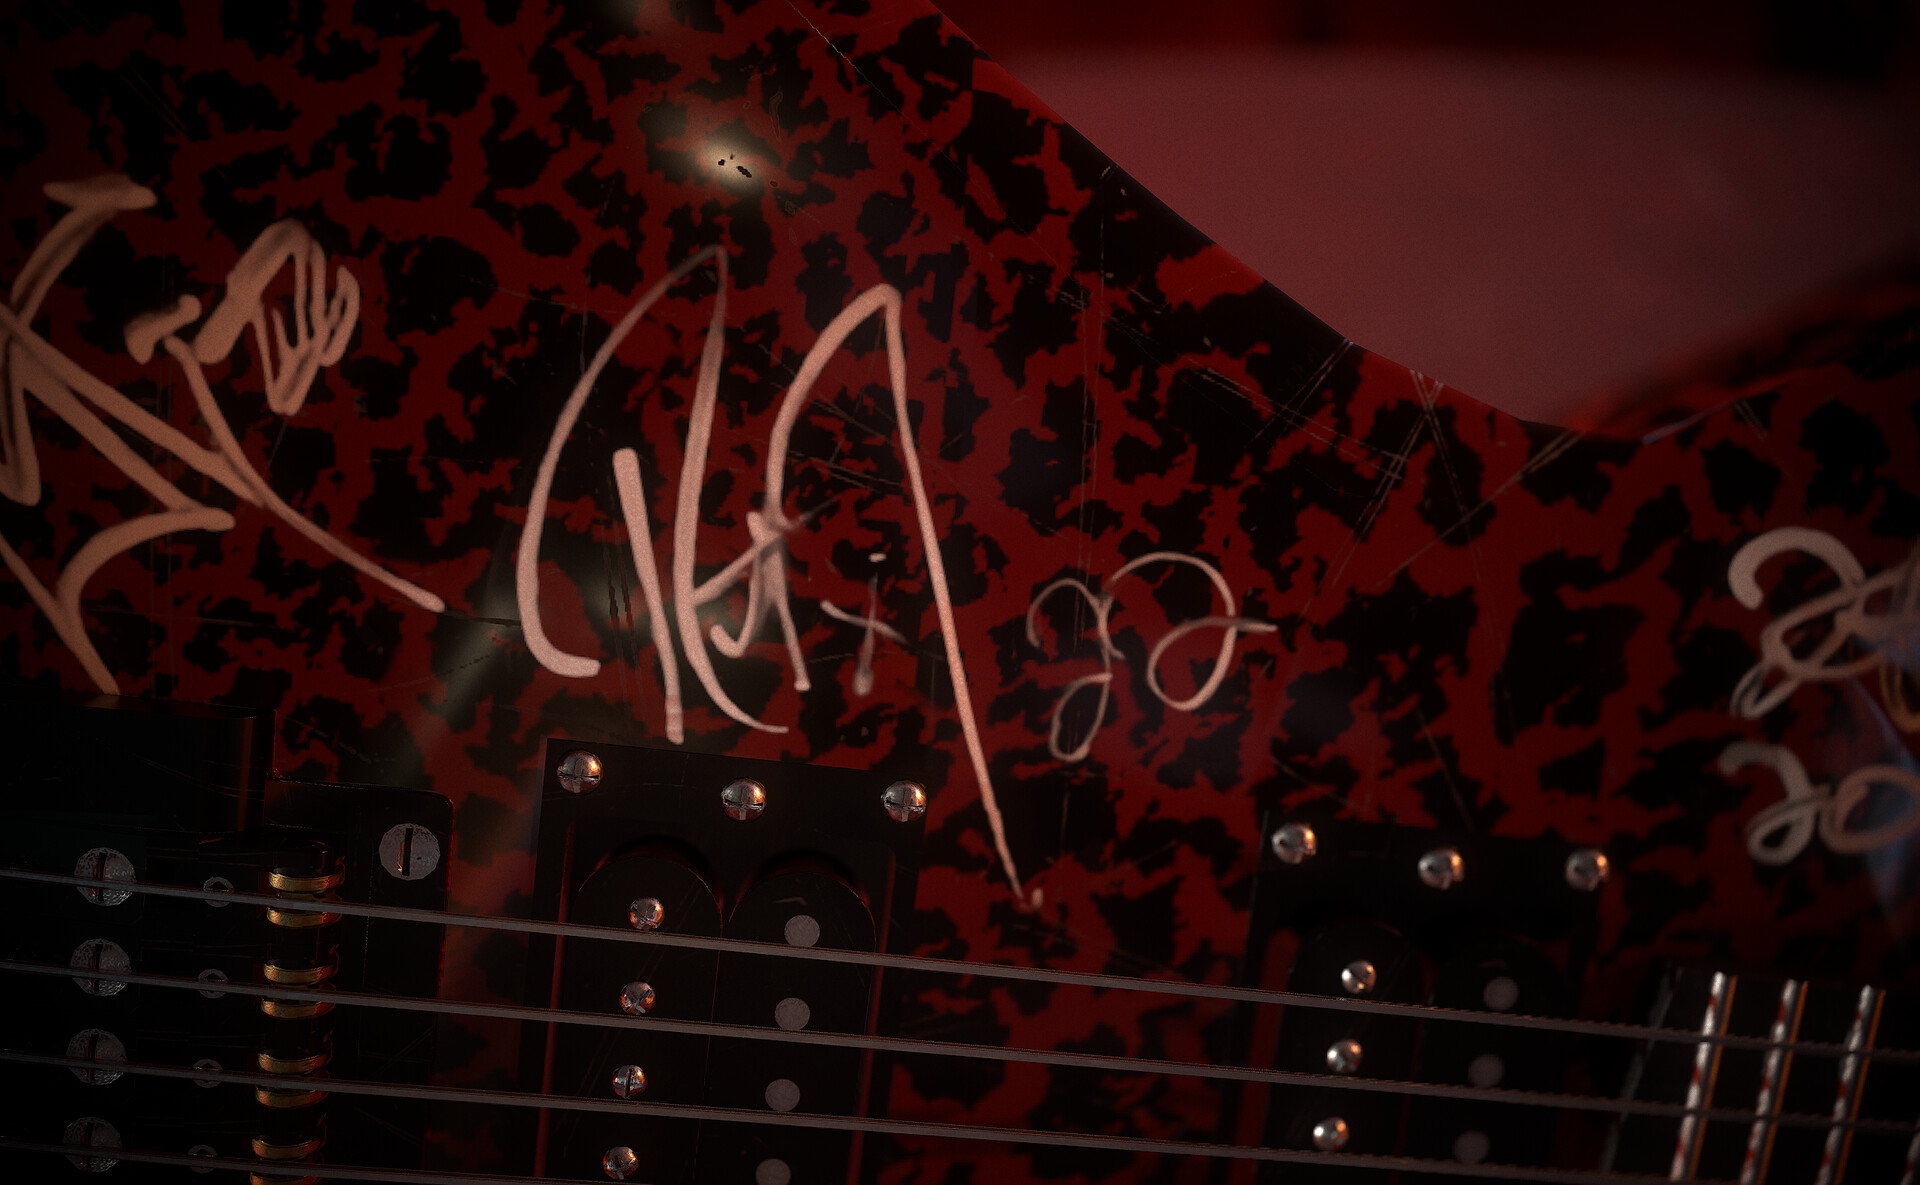 An Eddie violão, guitarra signed por metallica - Stranger Things fotografia  (44531136) - fanpop